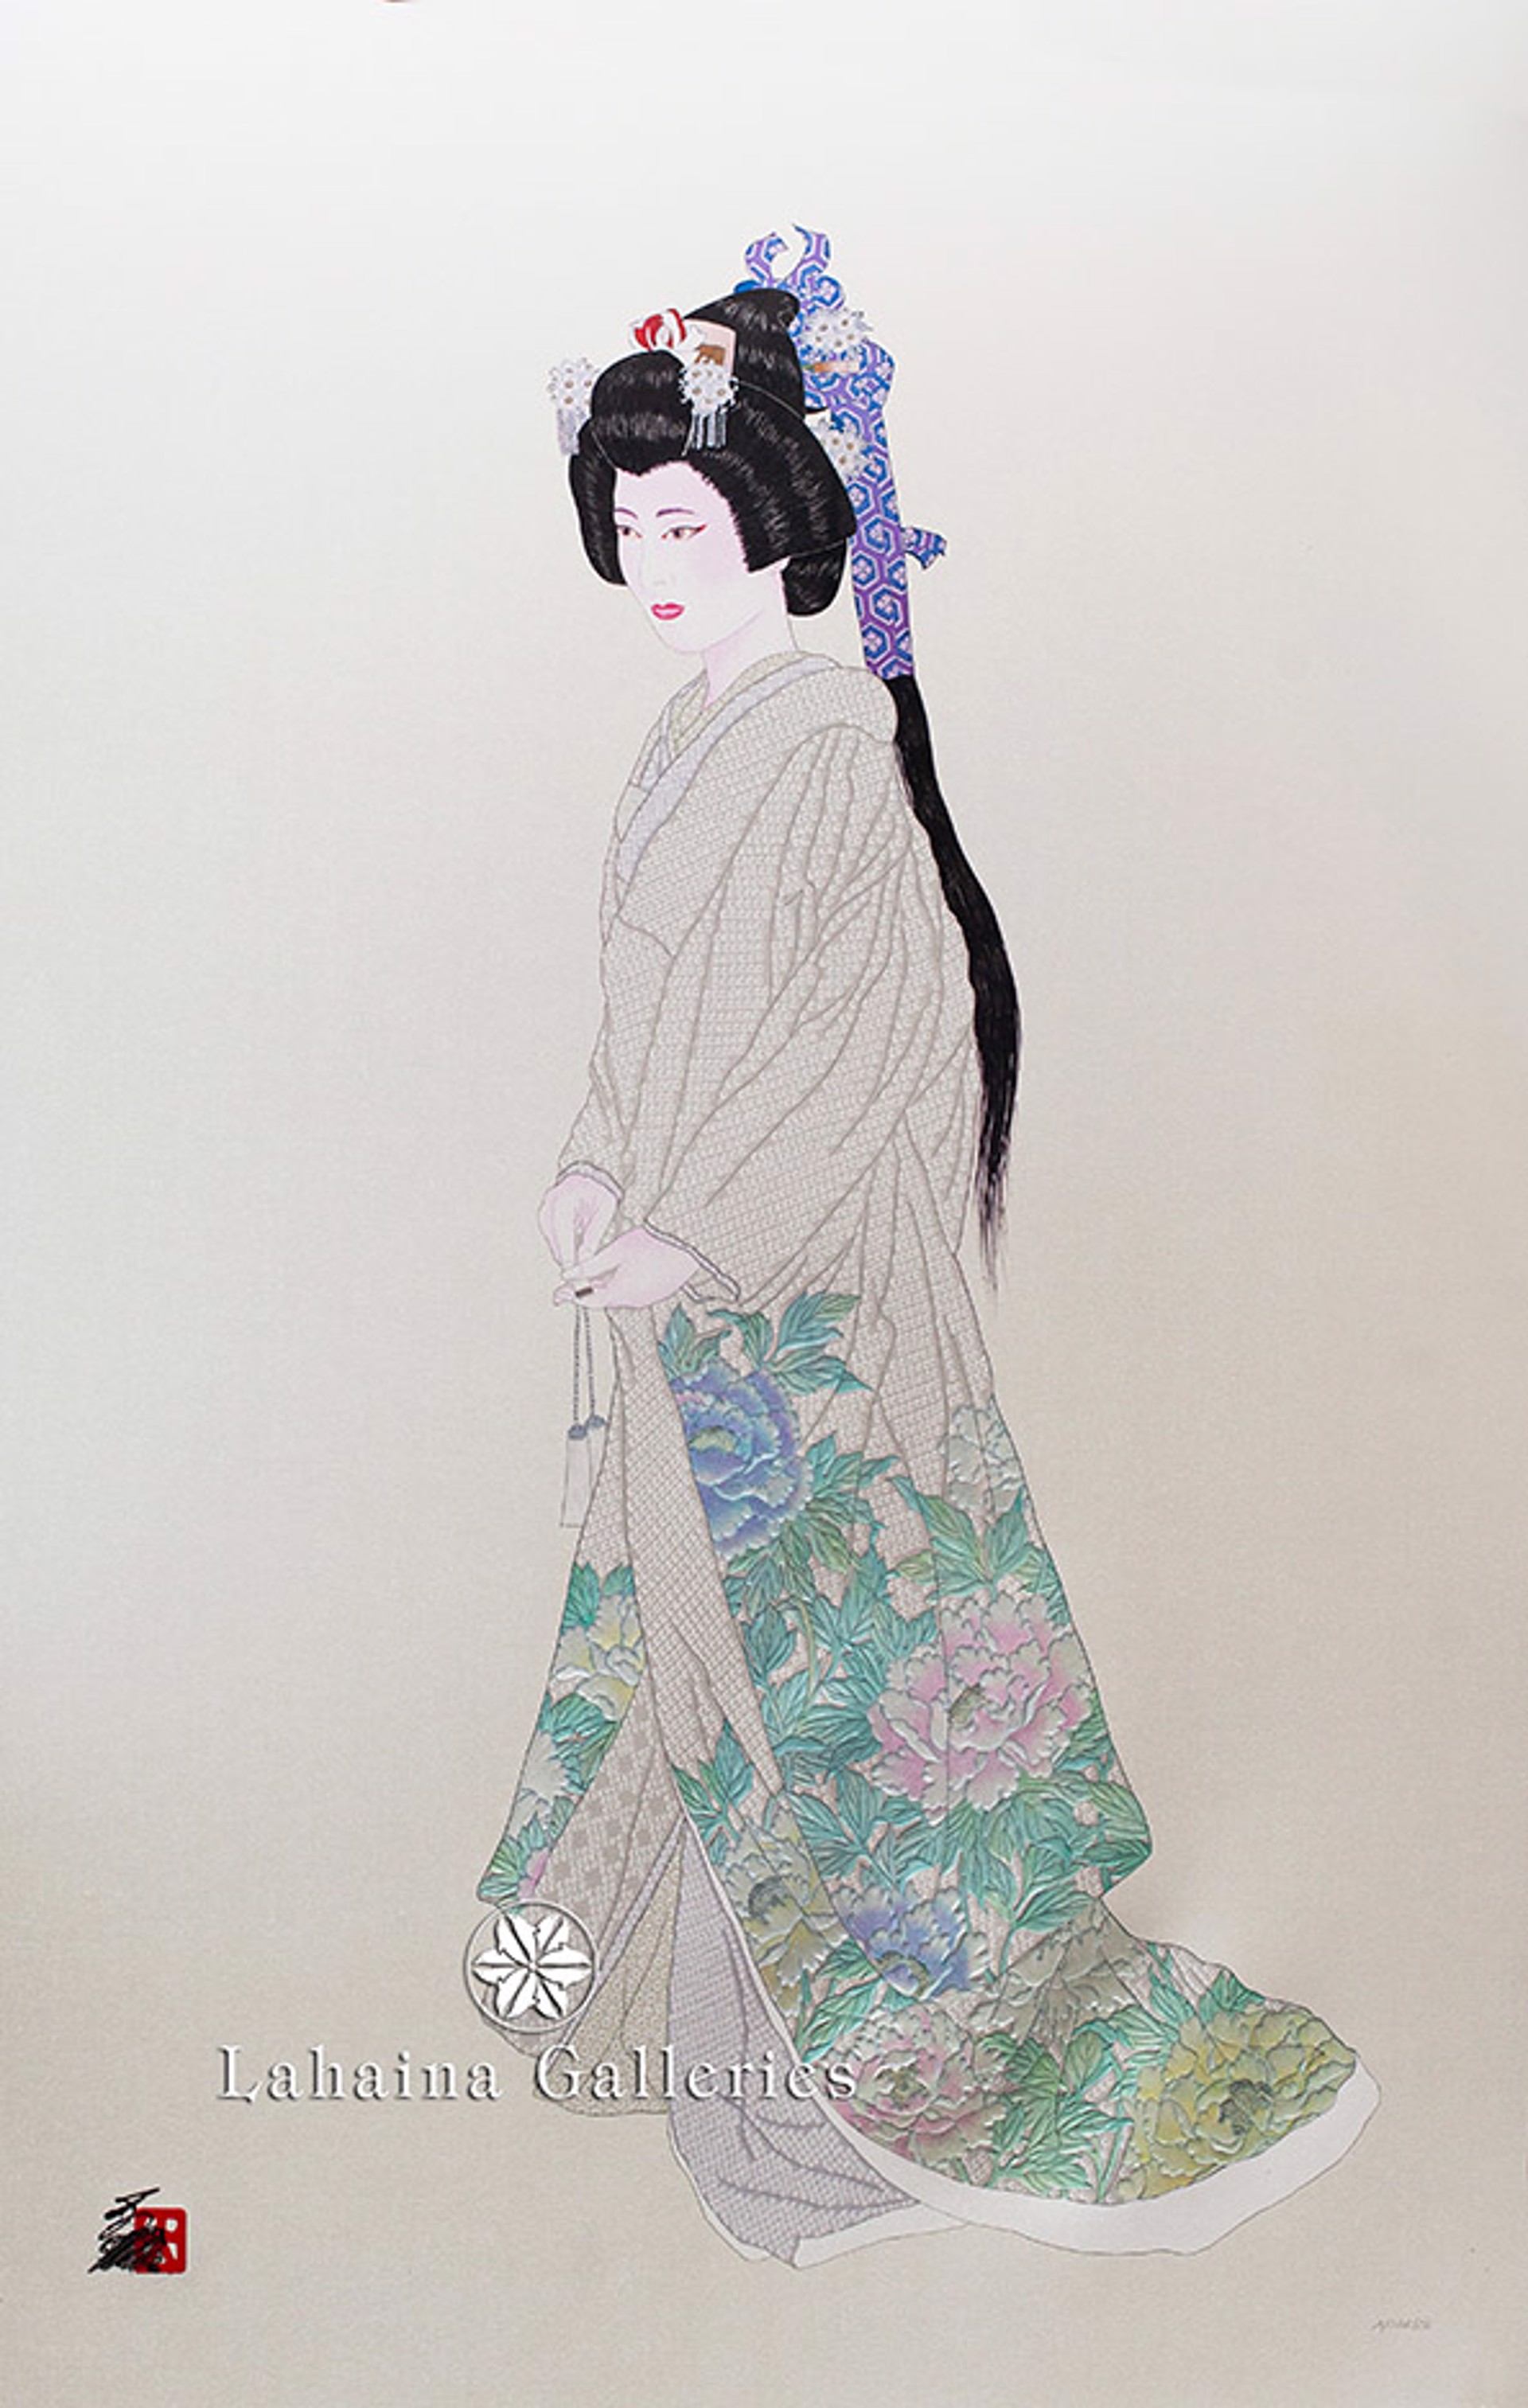 Purity (Hanayome Bridal Suite) by Hisashi Otsuka